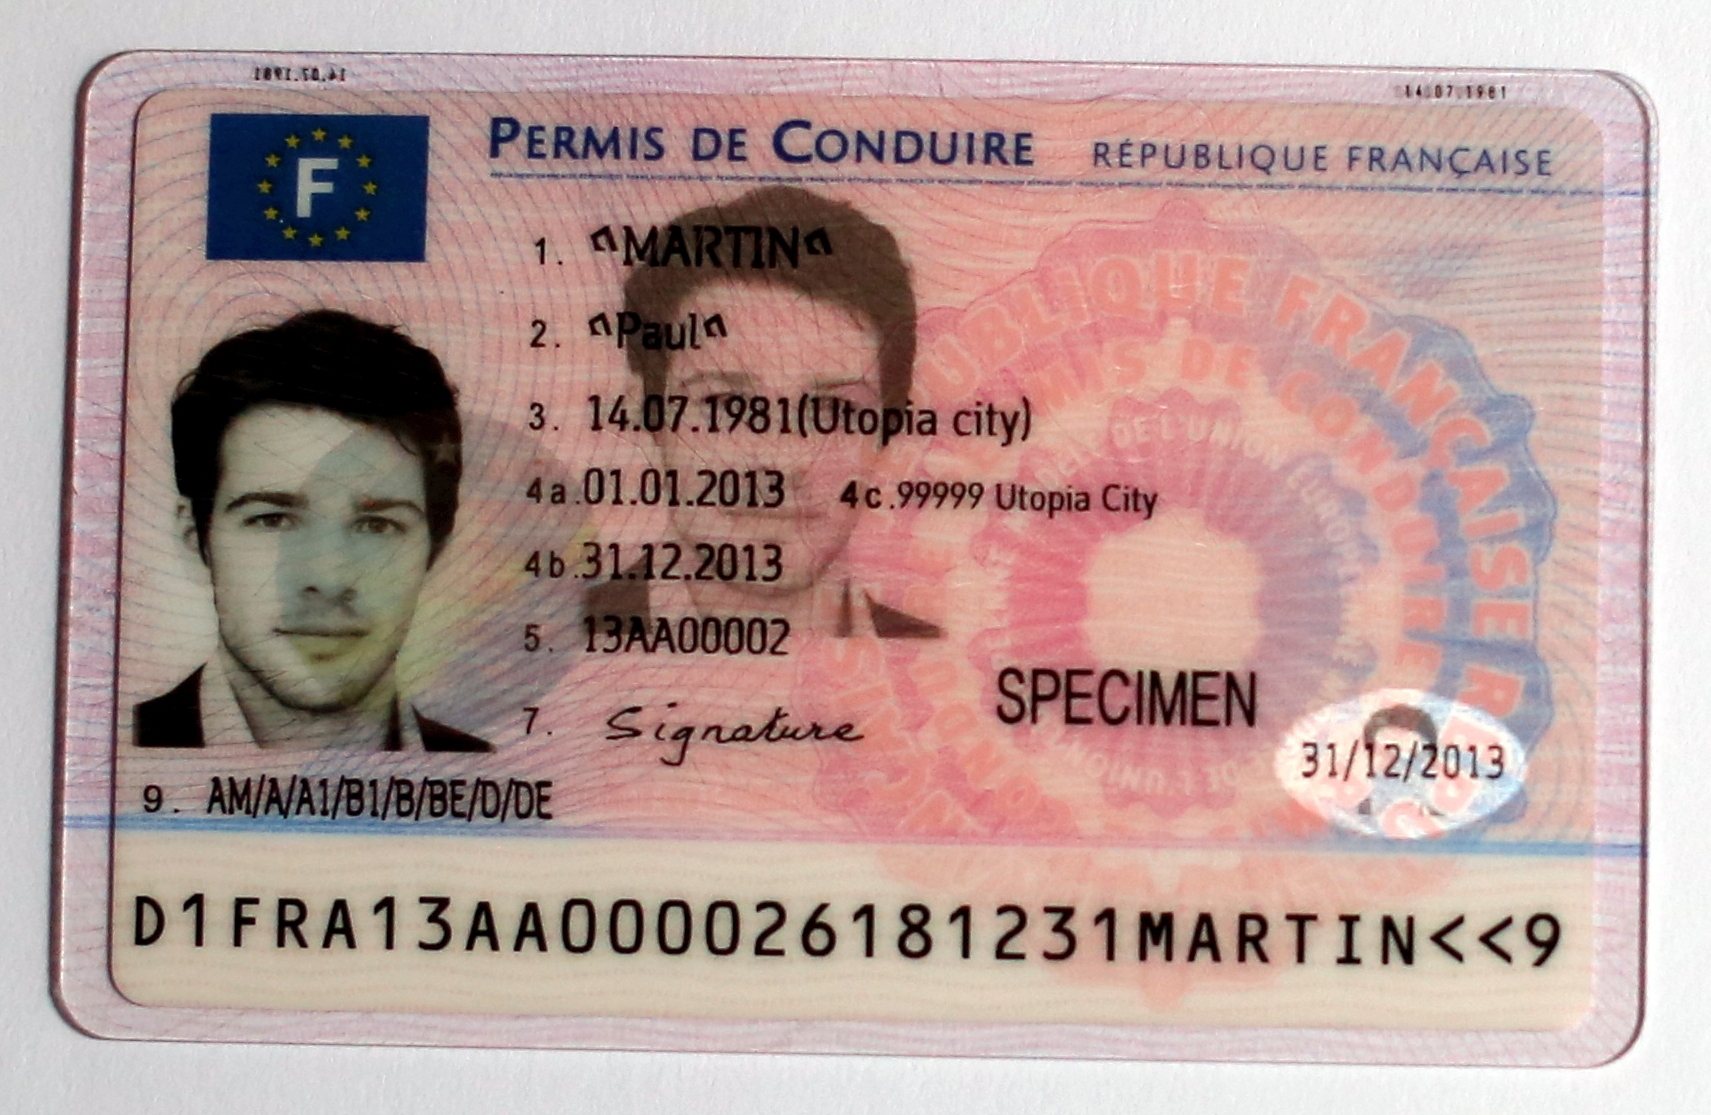 Le nouveau permis de conduire arrive en septembre 2013